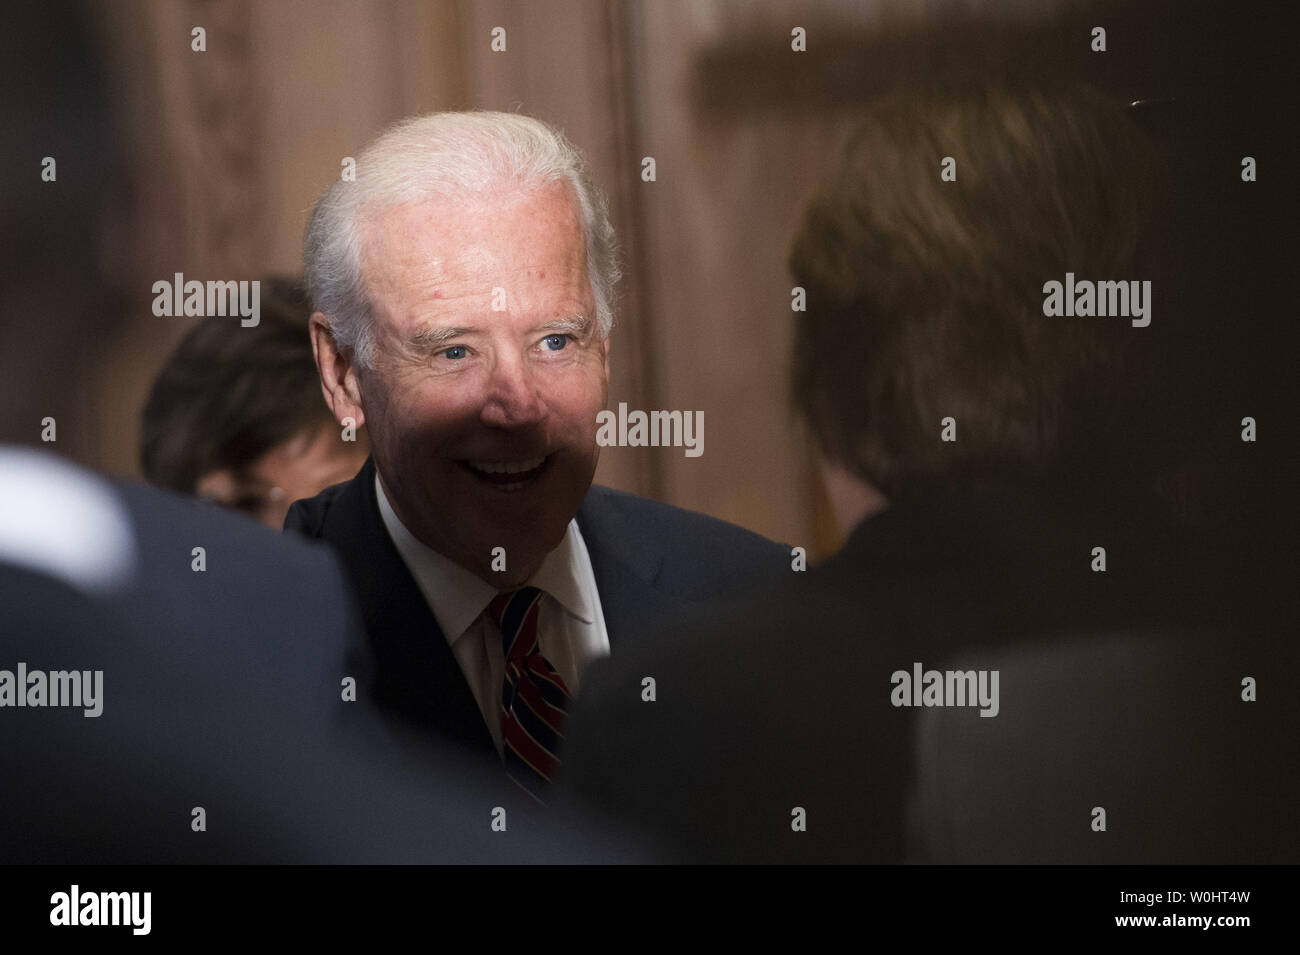 Vizepräsident Joe Biden grüßt die Zuschauer nach der Vereidigung Loretta Lynch als die 83rd Attorney General an das Justizministerium in Washington, D.C. am 27. April 2015. Foto von Kevin Dietsch/UPI Stockfoto